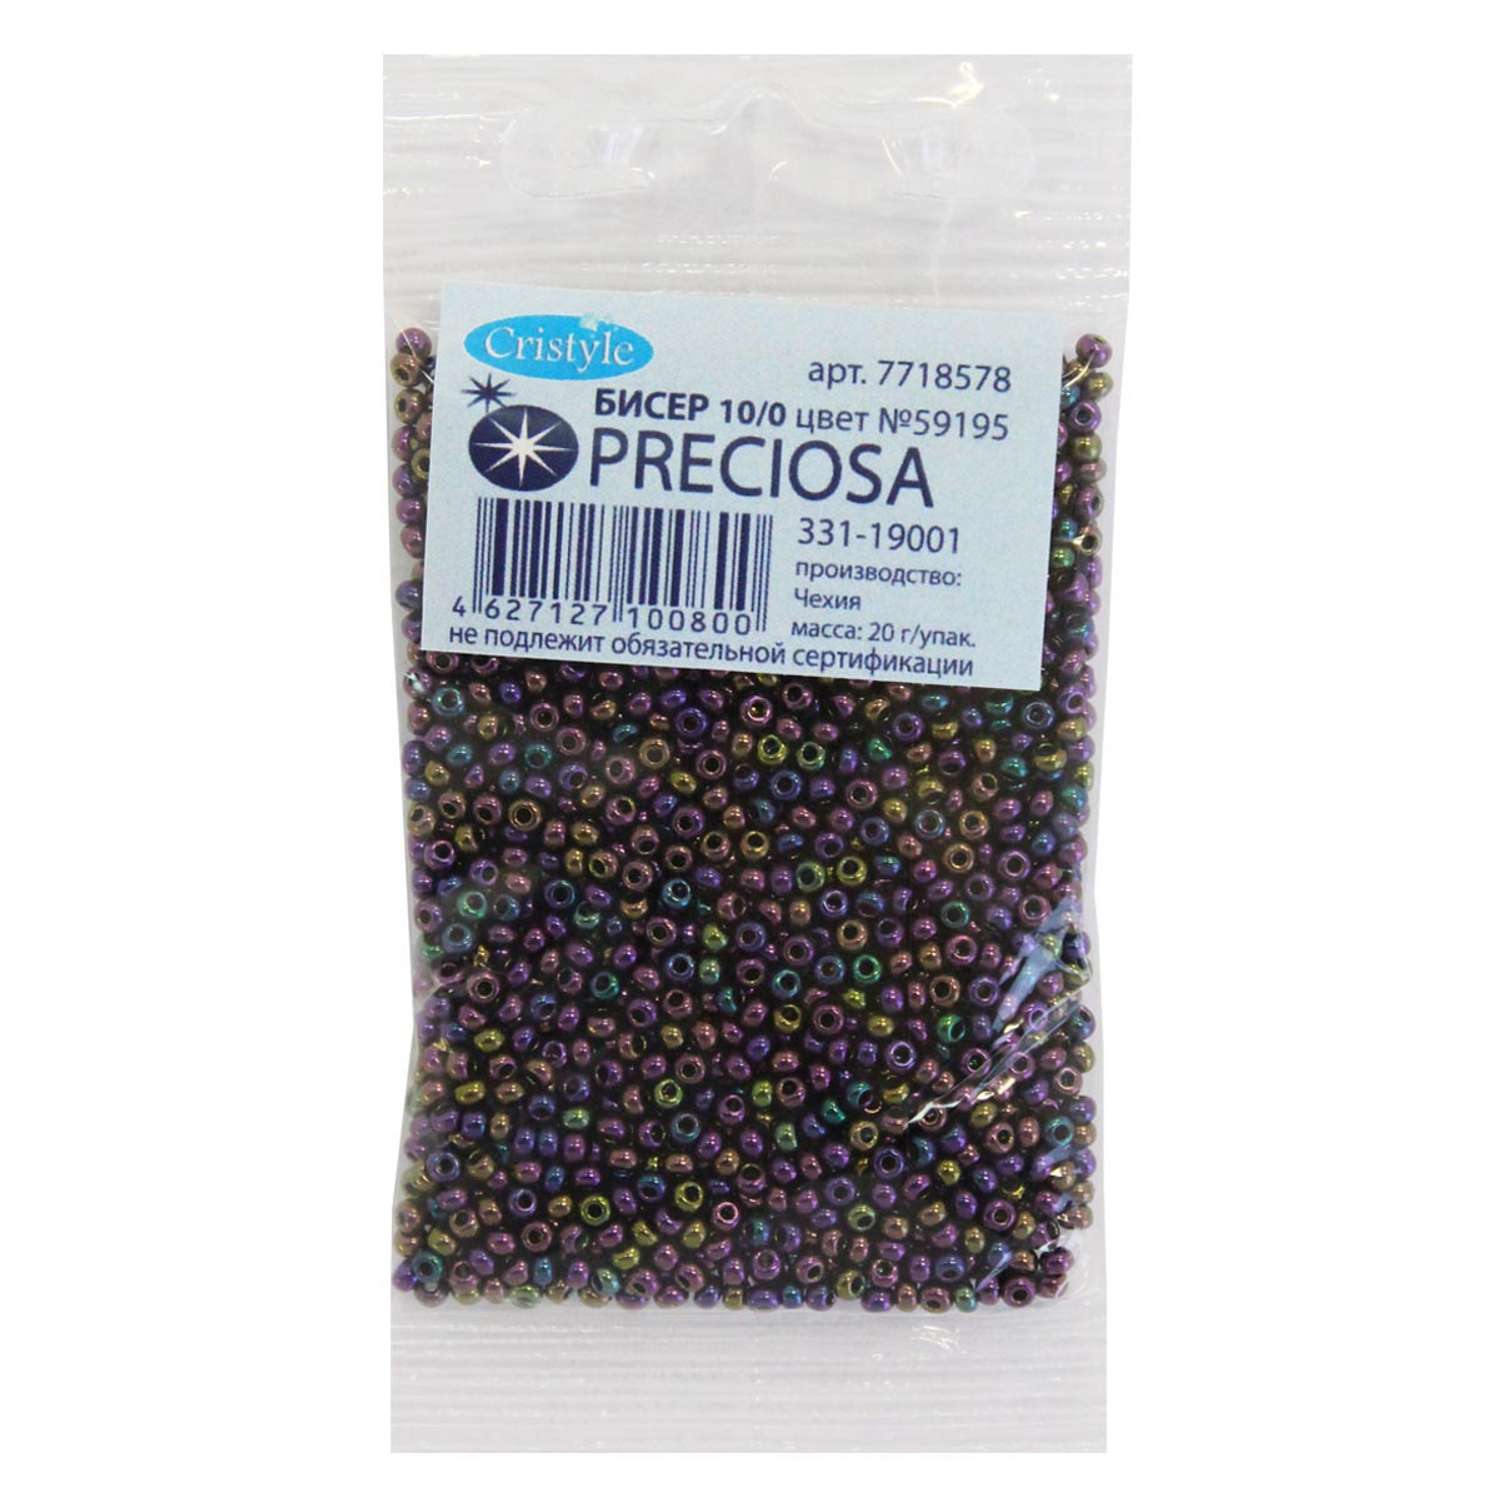 Бисер Preciosa чешский цветной радужный 10/0 20 гр Прециоза 59195 бордово-фиолетовый - фото 1